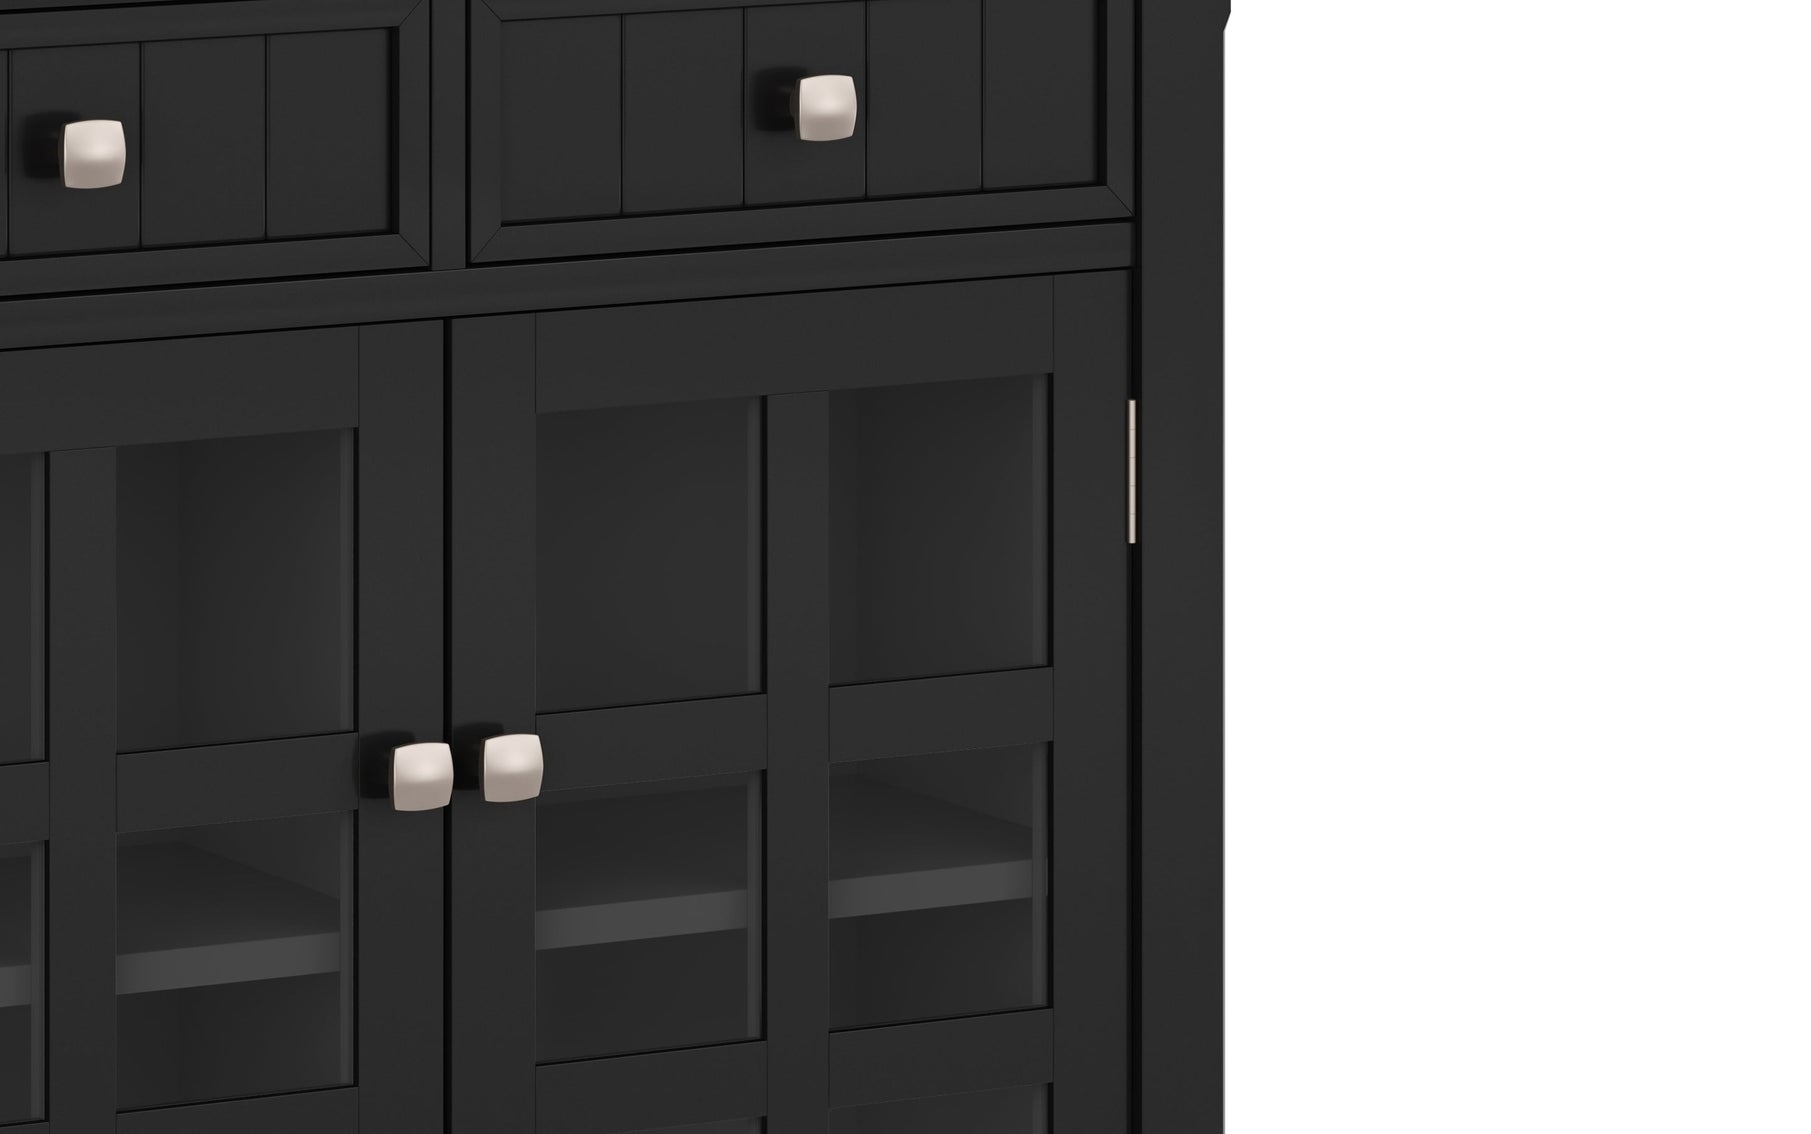 Black | Acadian Entryway Storage Cabinet